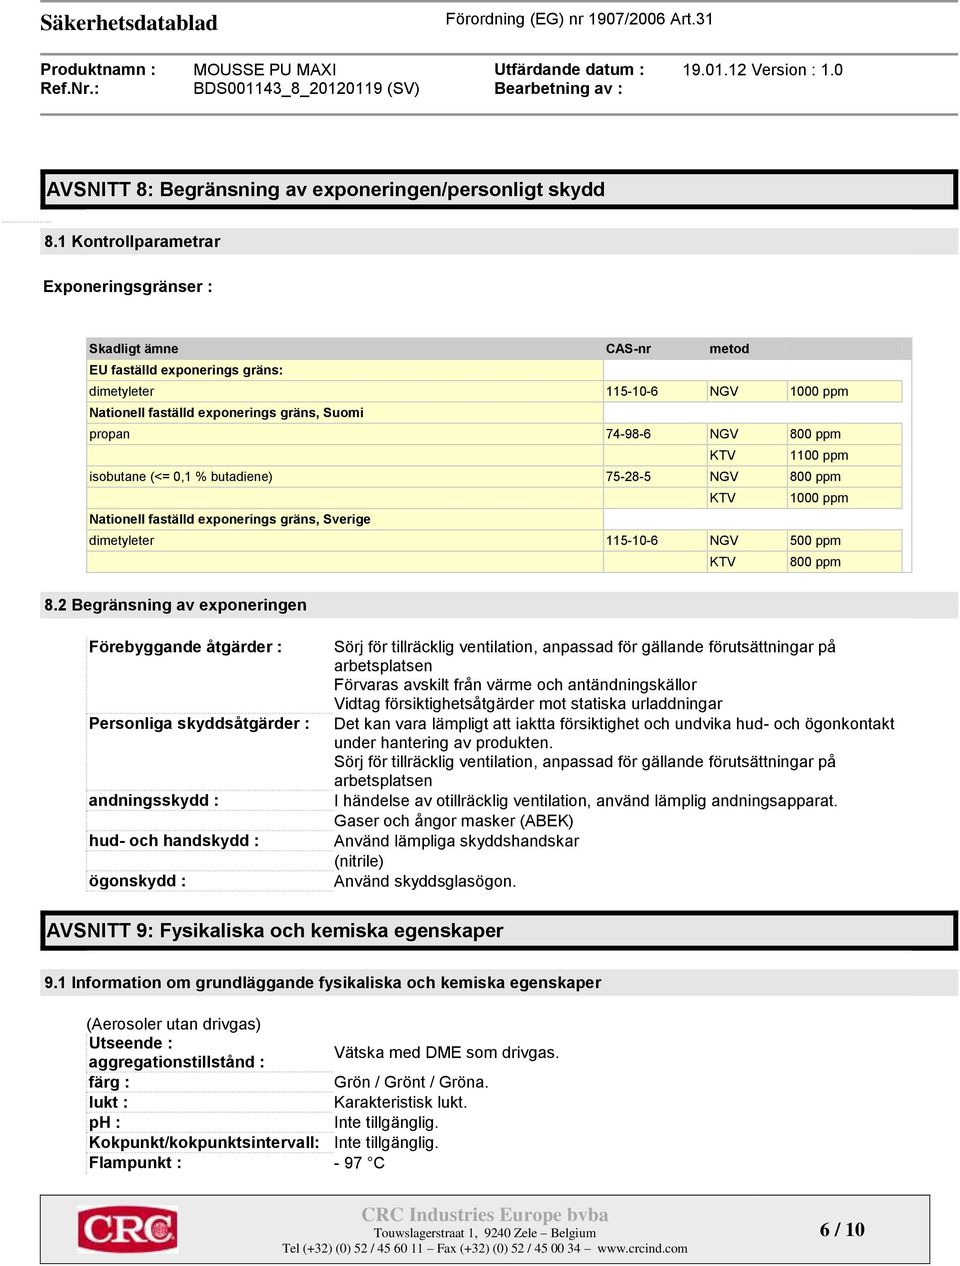 800 ppm KTV 1100 ppm isobutane (<= 0,1 % butadiene) 75-28-5 NGV 800 ppm KTV 1000 ppm Nationell faställd exponerings gräns, Sverige dimetyleter 115-10-6 NGV 500 ppm KTV 800 ppm 8.